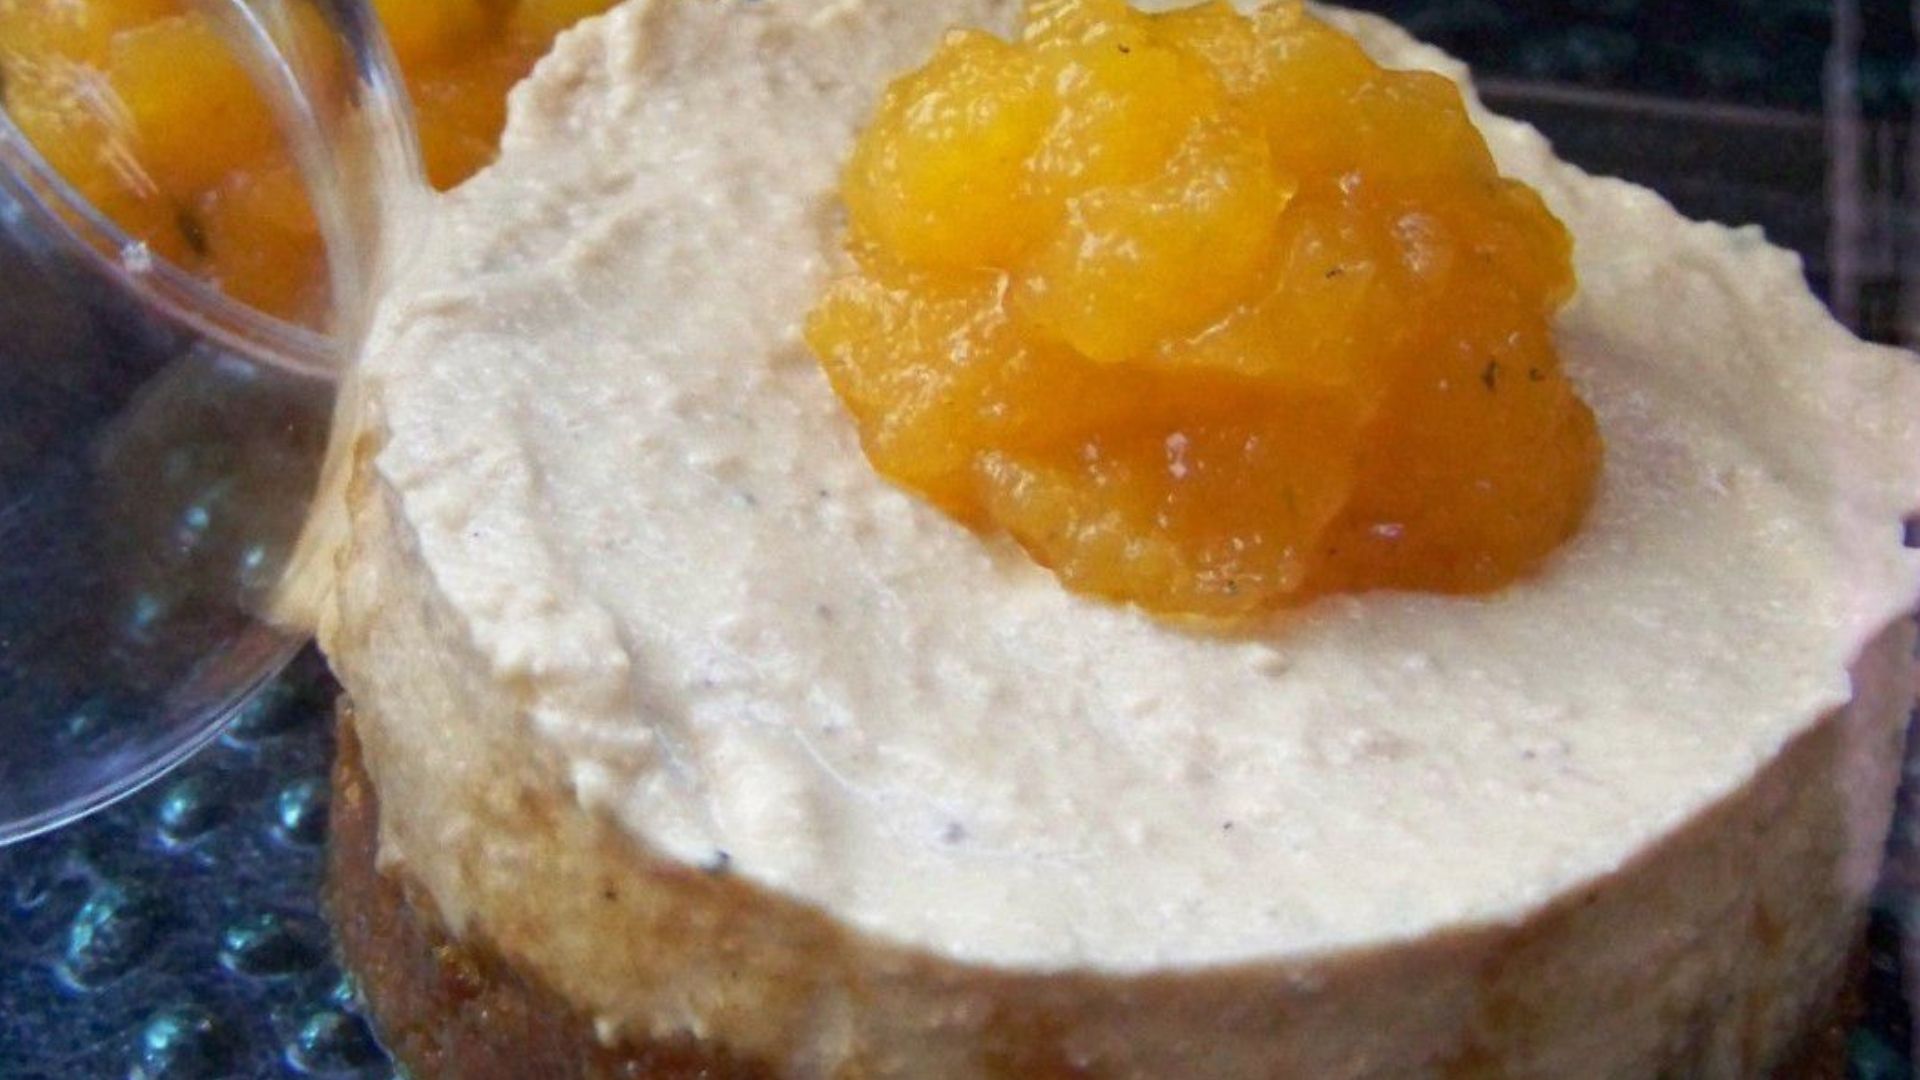 mousse de foie gras de canard de la maison petricorena sur pain depice et gelee de passion